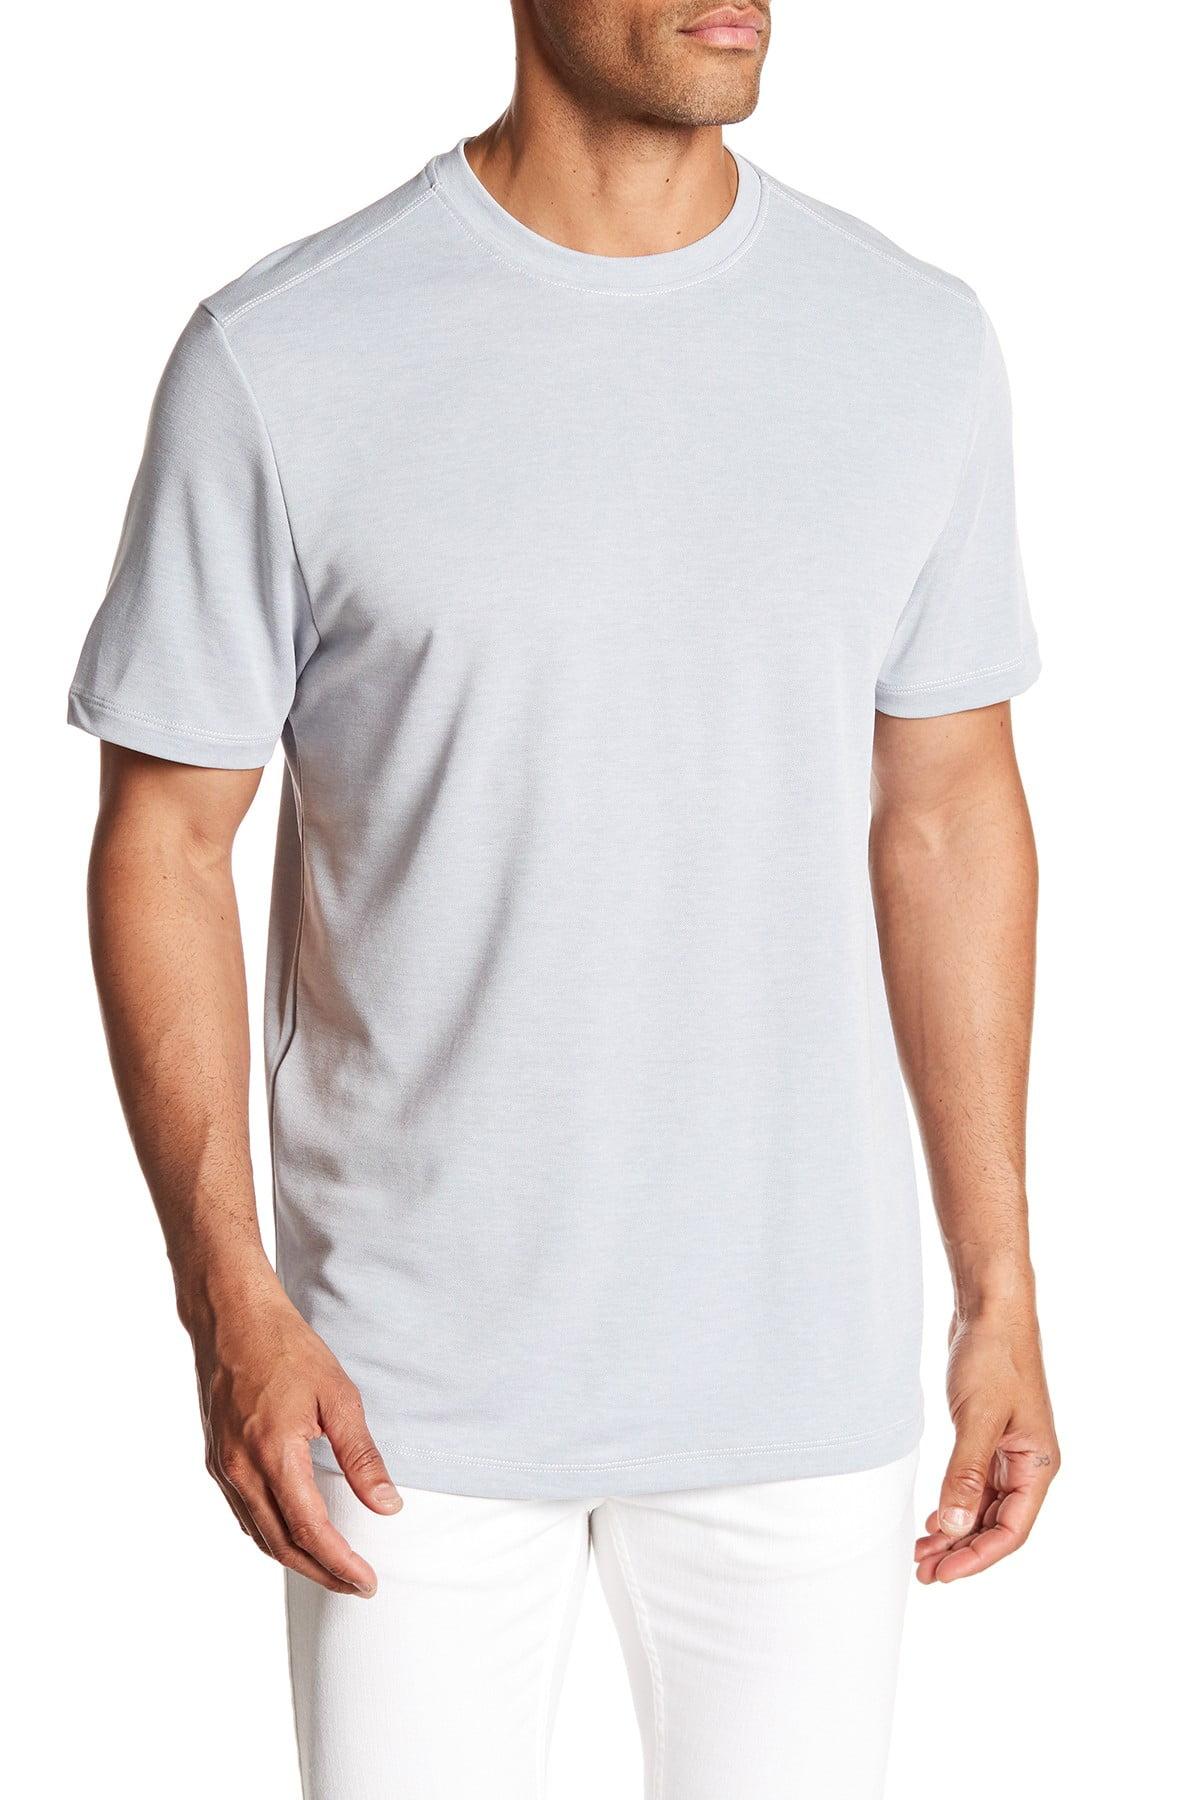 Shoreline Surf T-shirt in White for Men 